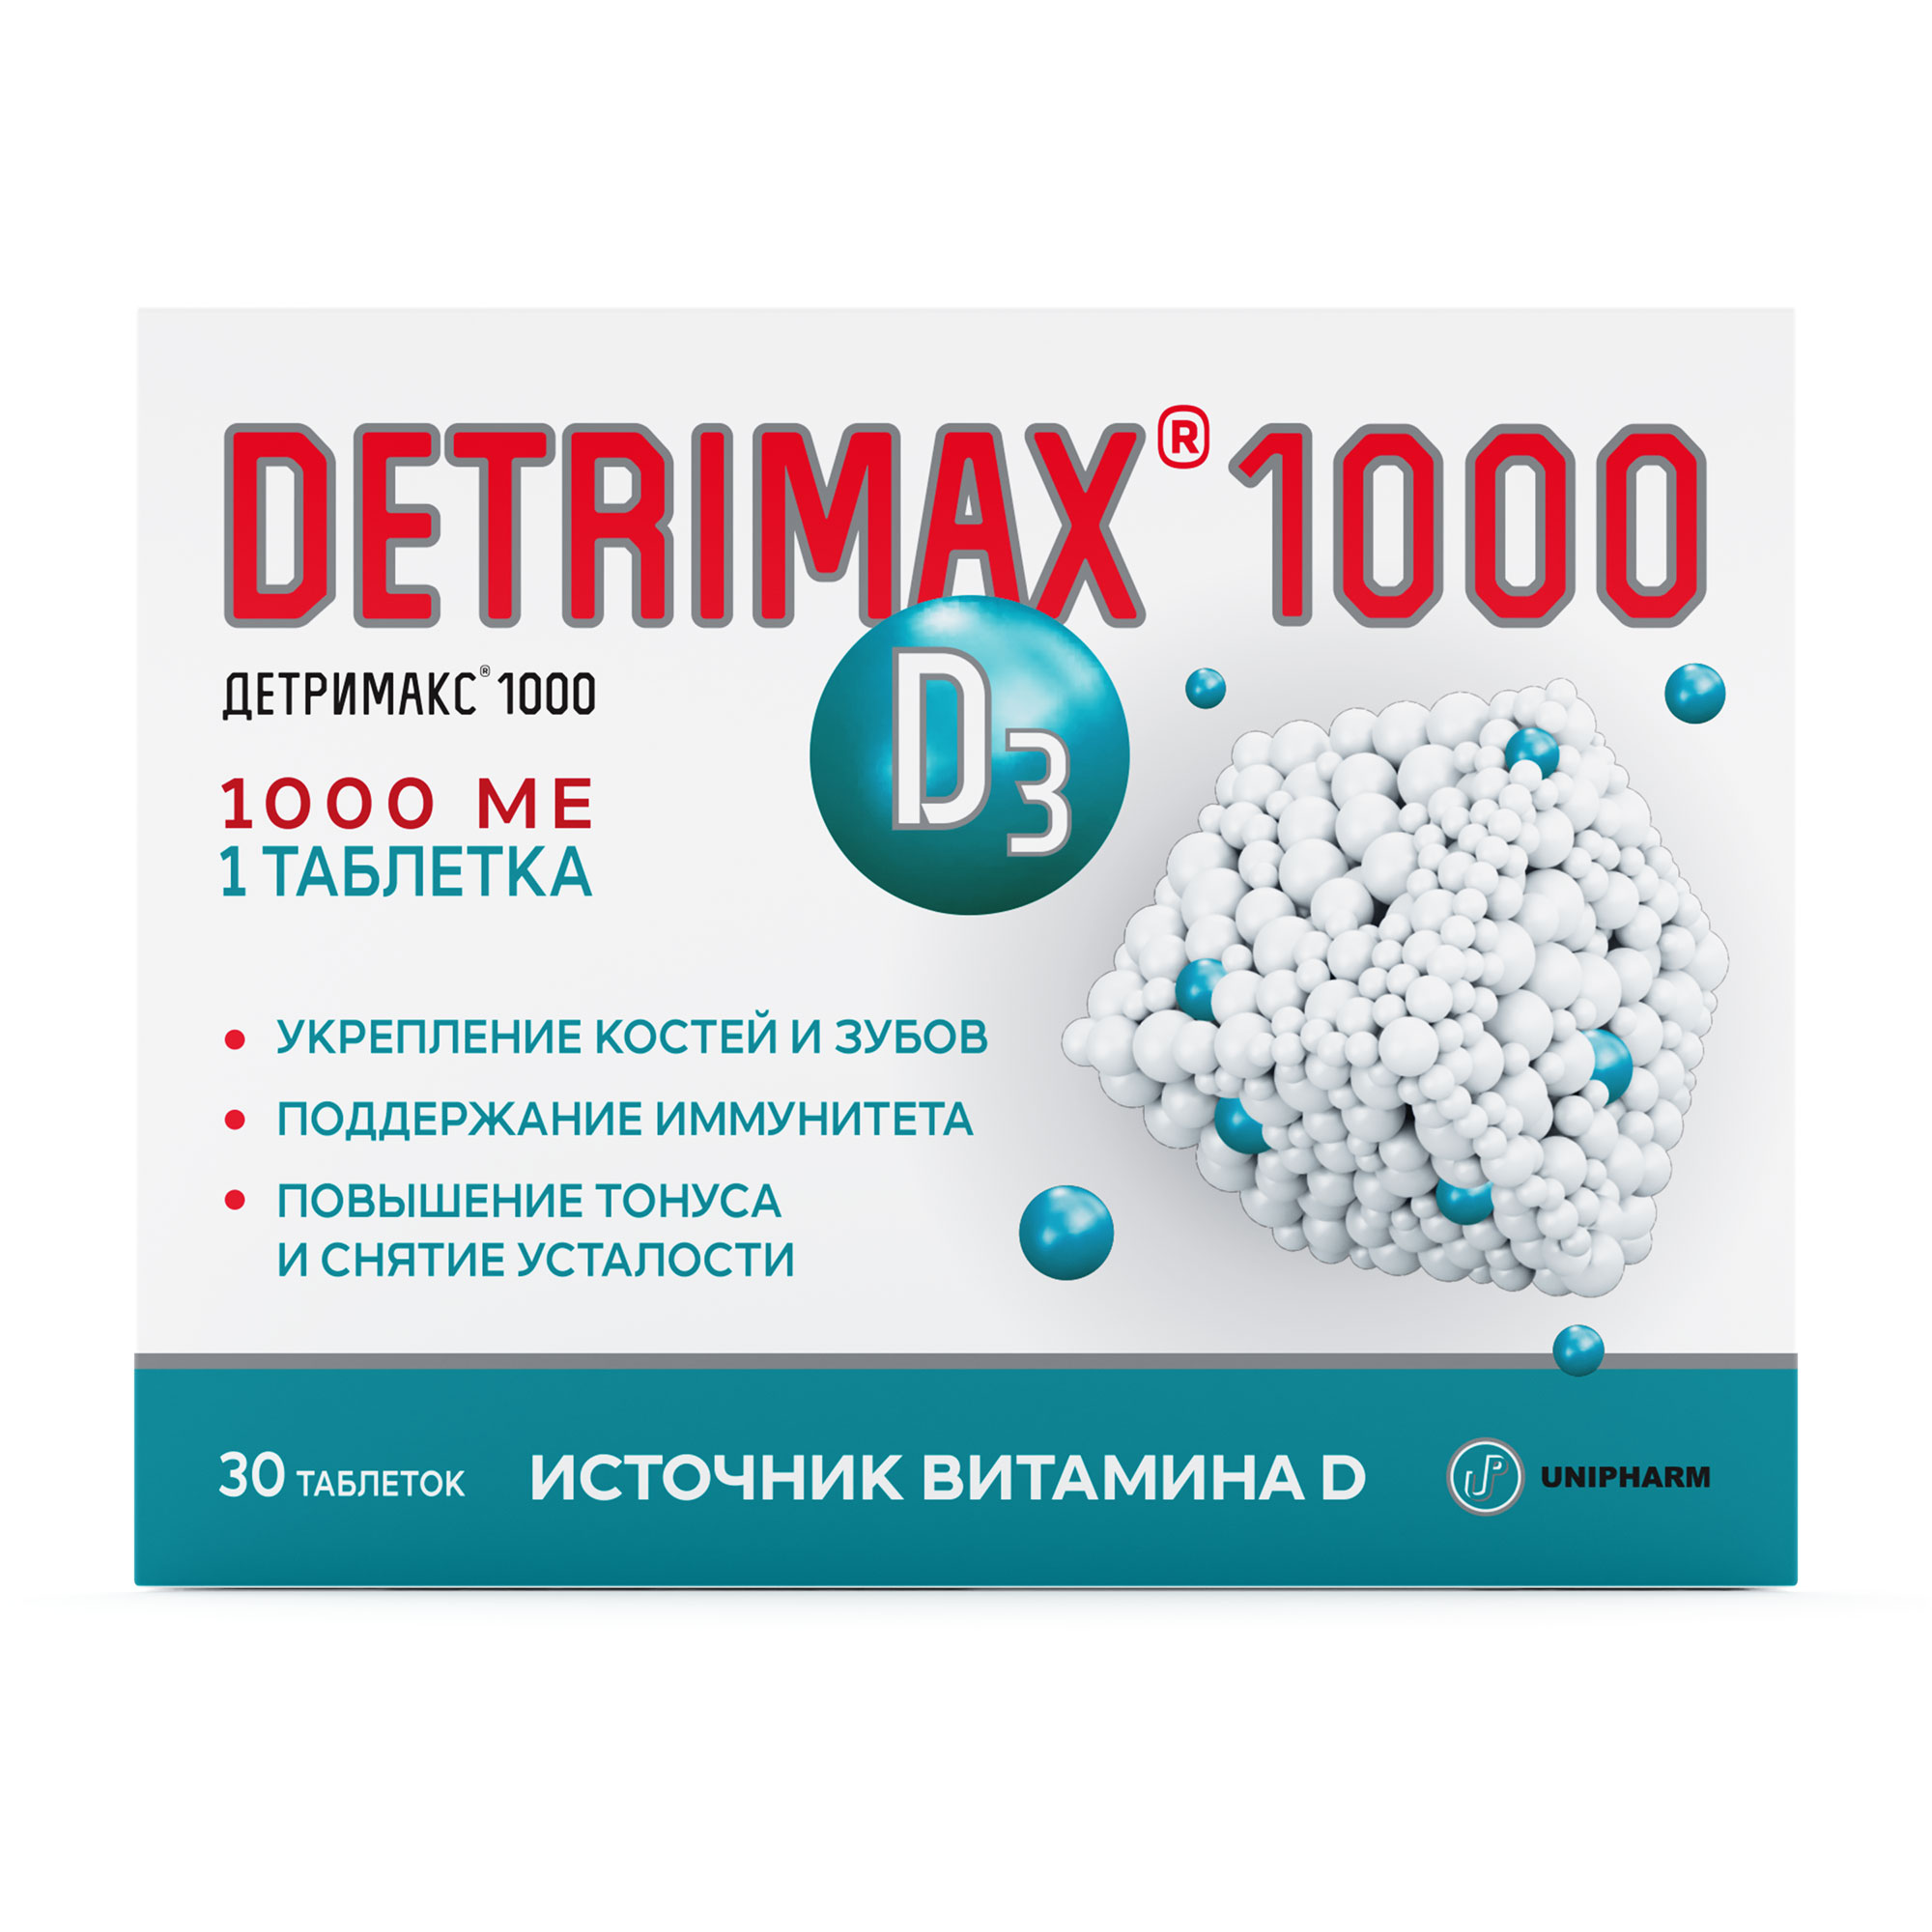 Детримакс д3 1000